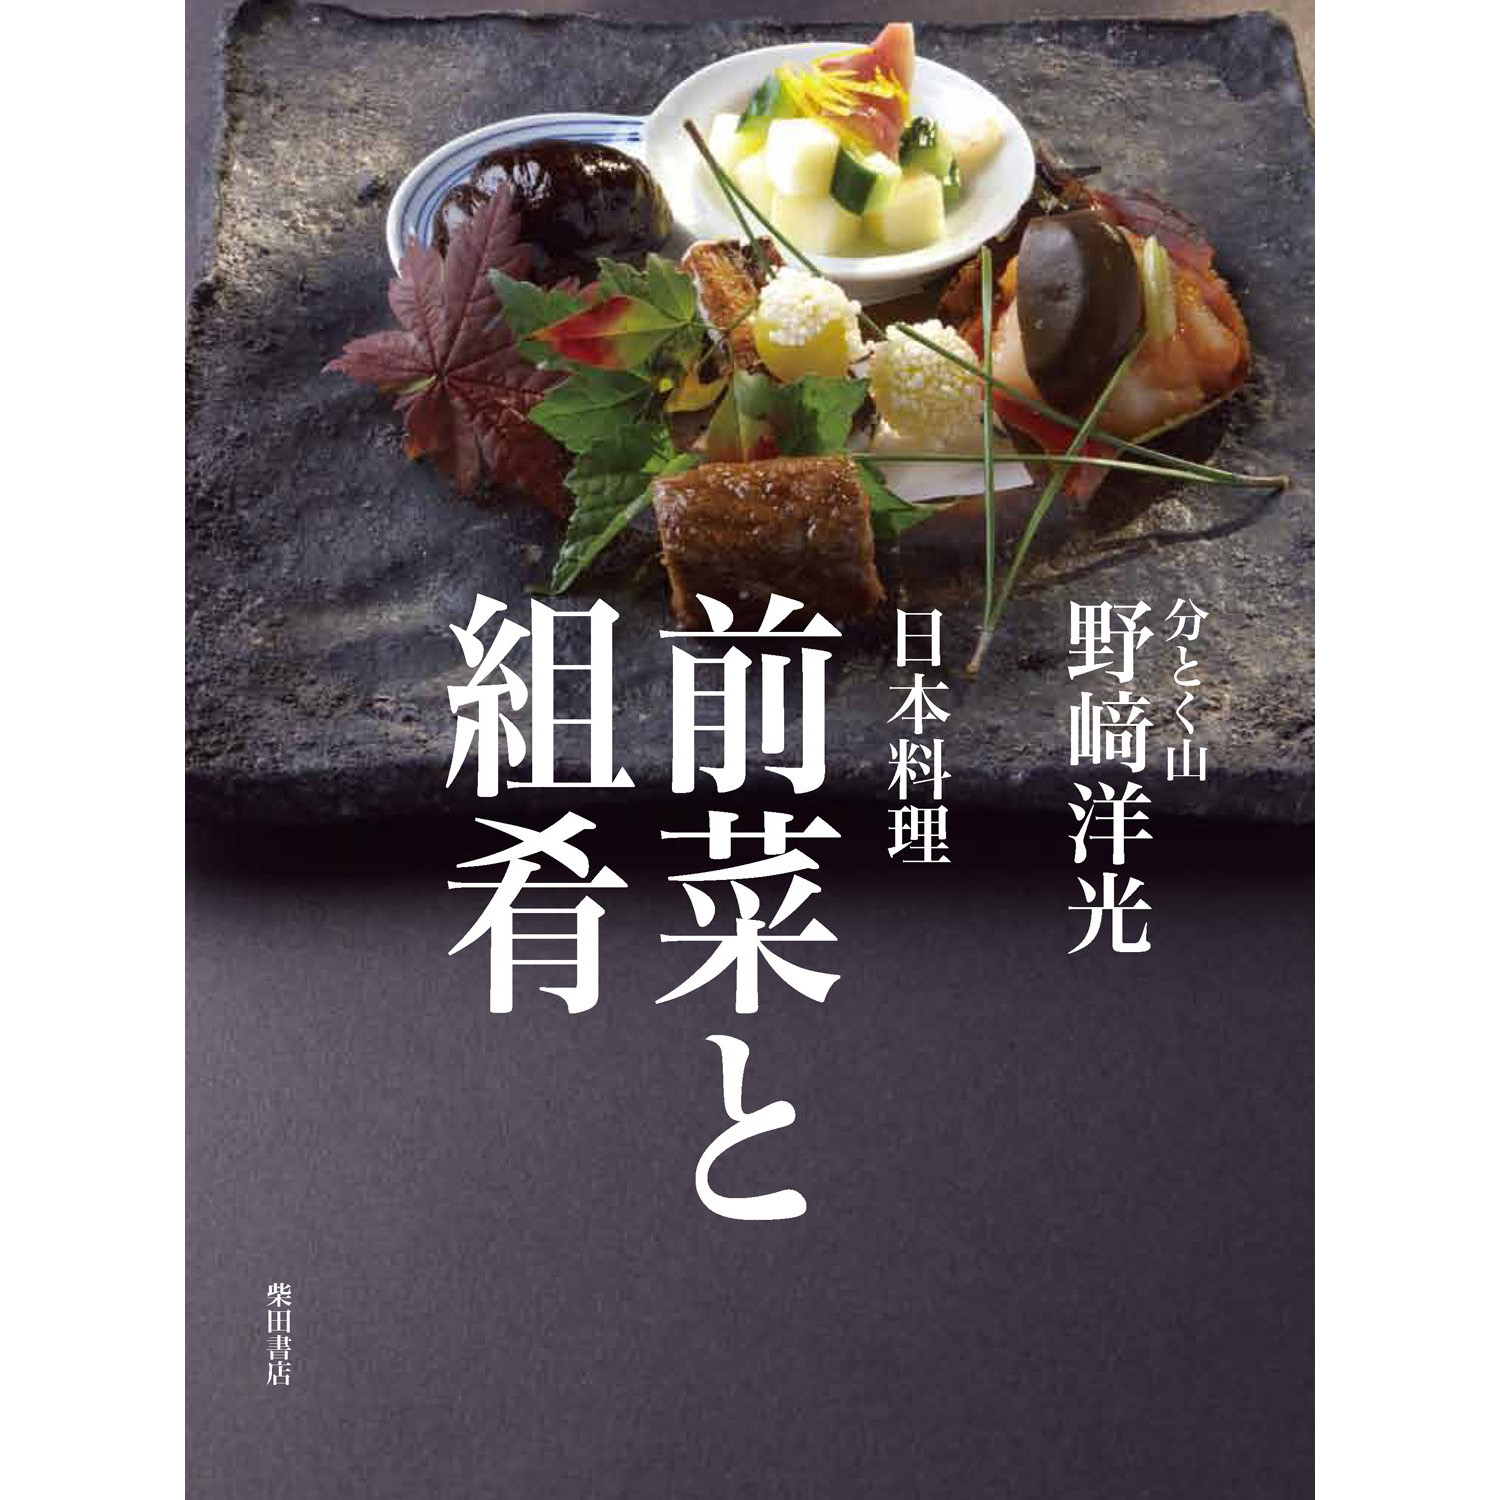 现货酒肴の展開:美味しい献立の増232种日本清酒食谱书野崎洋光-Taobao